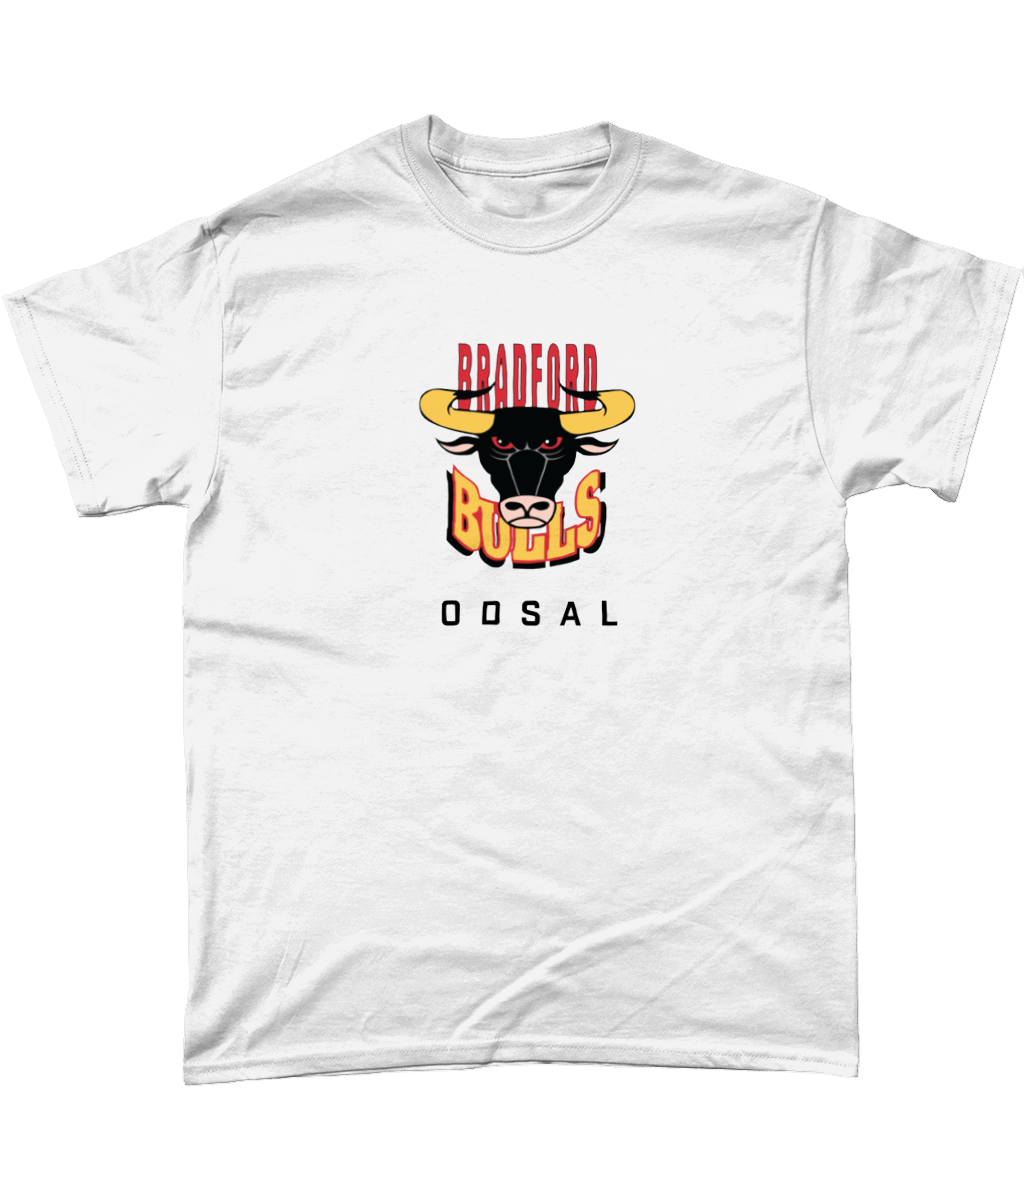 Bradford Bulls "Odsal" T-Shirt in White